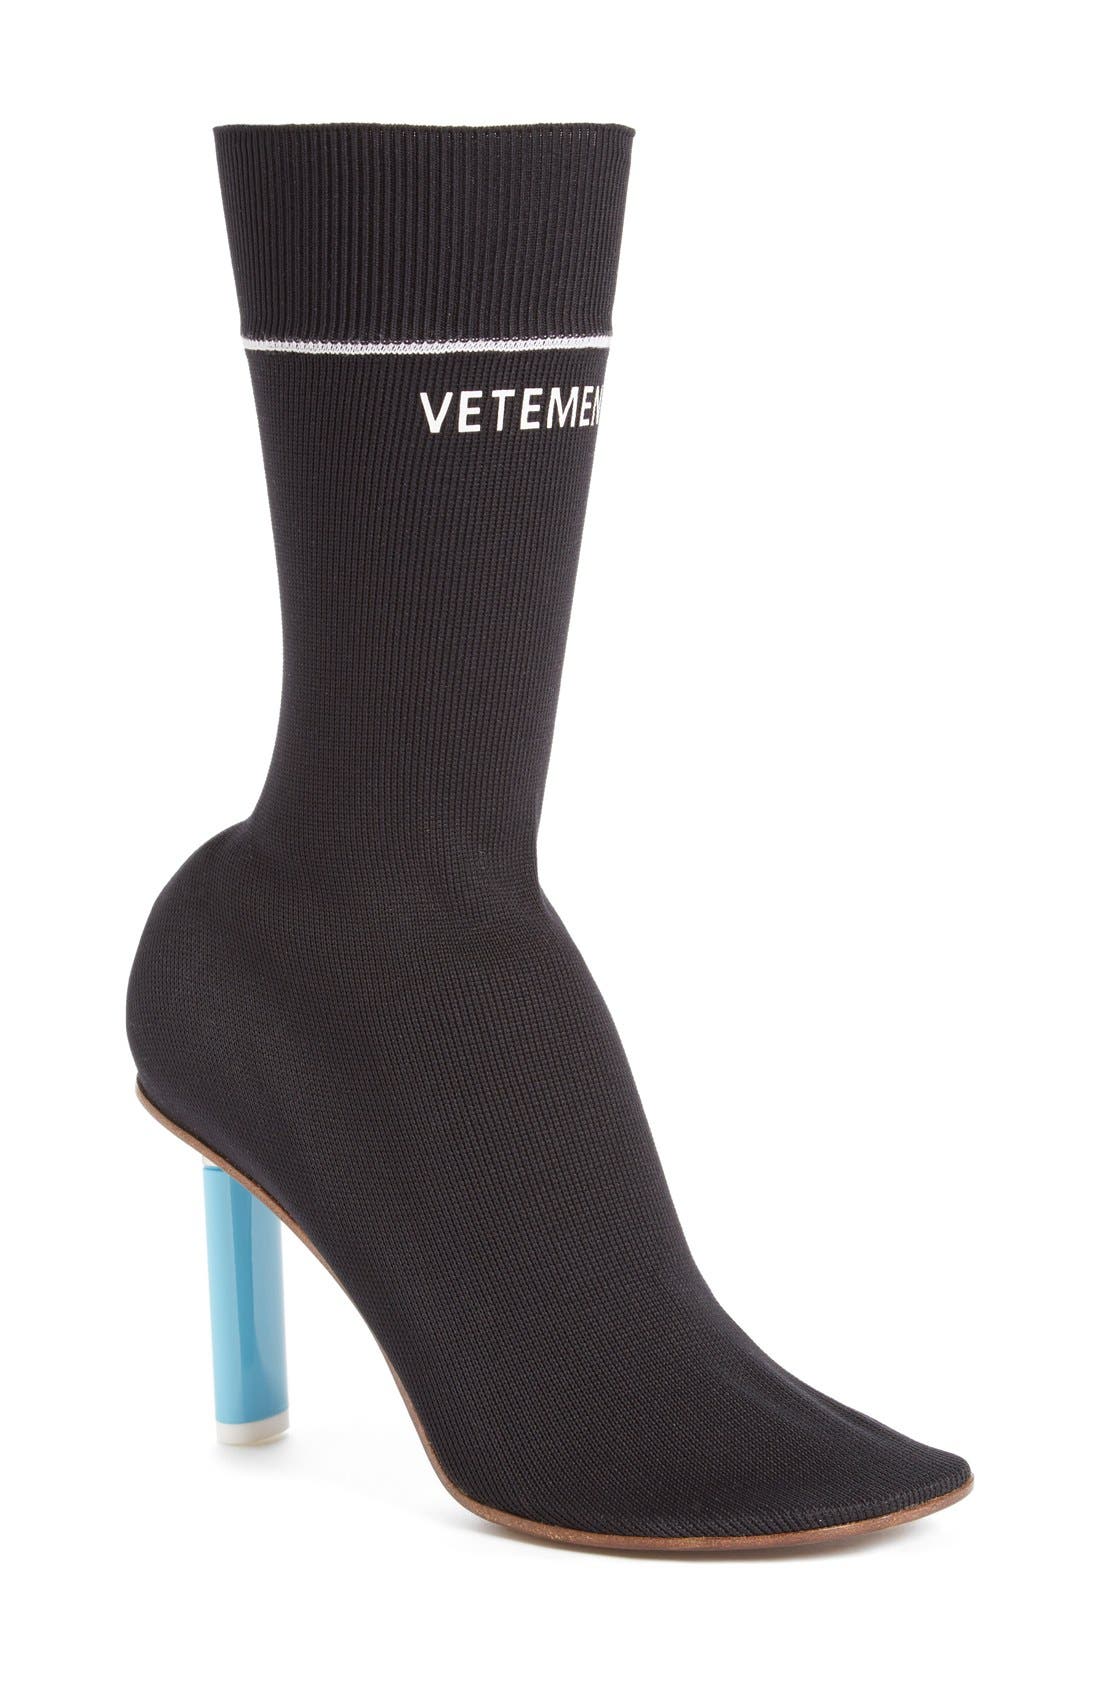 designer sock booties